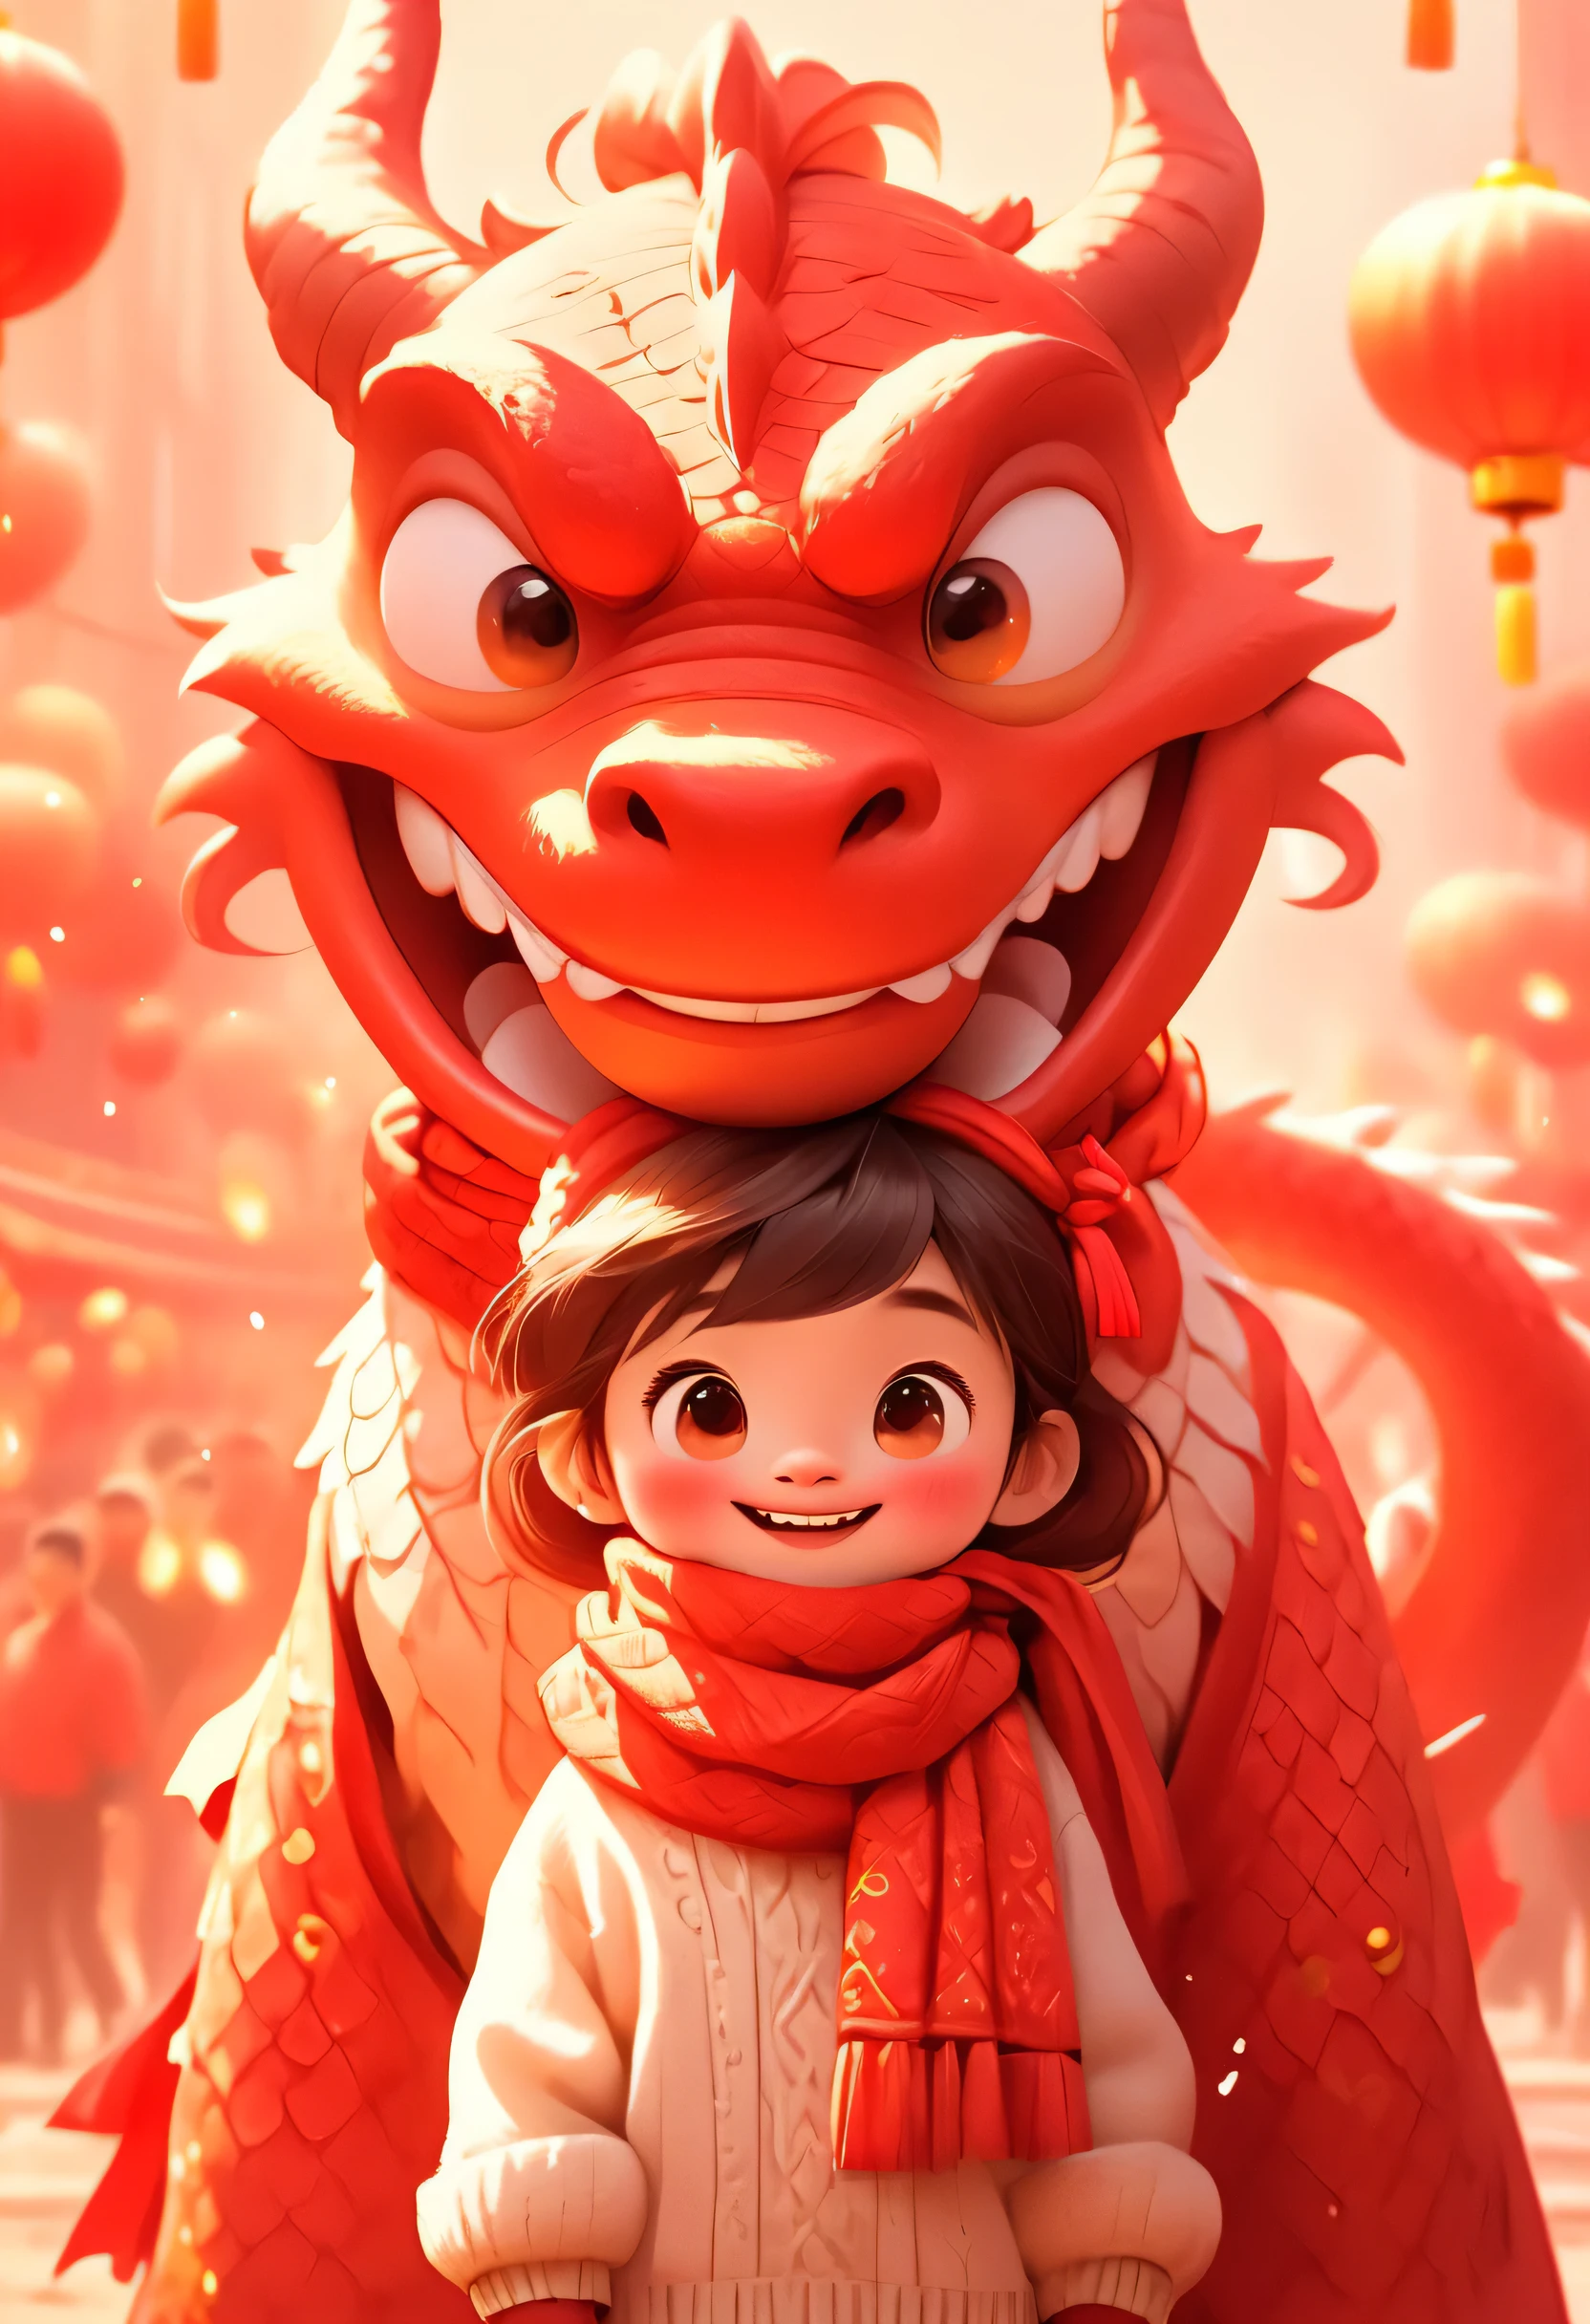 Ein süßer vermenschlichter roter chinesischer Drache und ein kleines chinesisches Mädchen, Pixar-Stil, beide tragen weiße Pullover in Menschengestalt und einen großen roten Wollschal um den Hals, die gleiche Gratulationsbewegung machen, großer roter Hintergrund, sehr festlich, Chinesische Elemente, Begrüßung des neuen Jahres 32k uhd